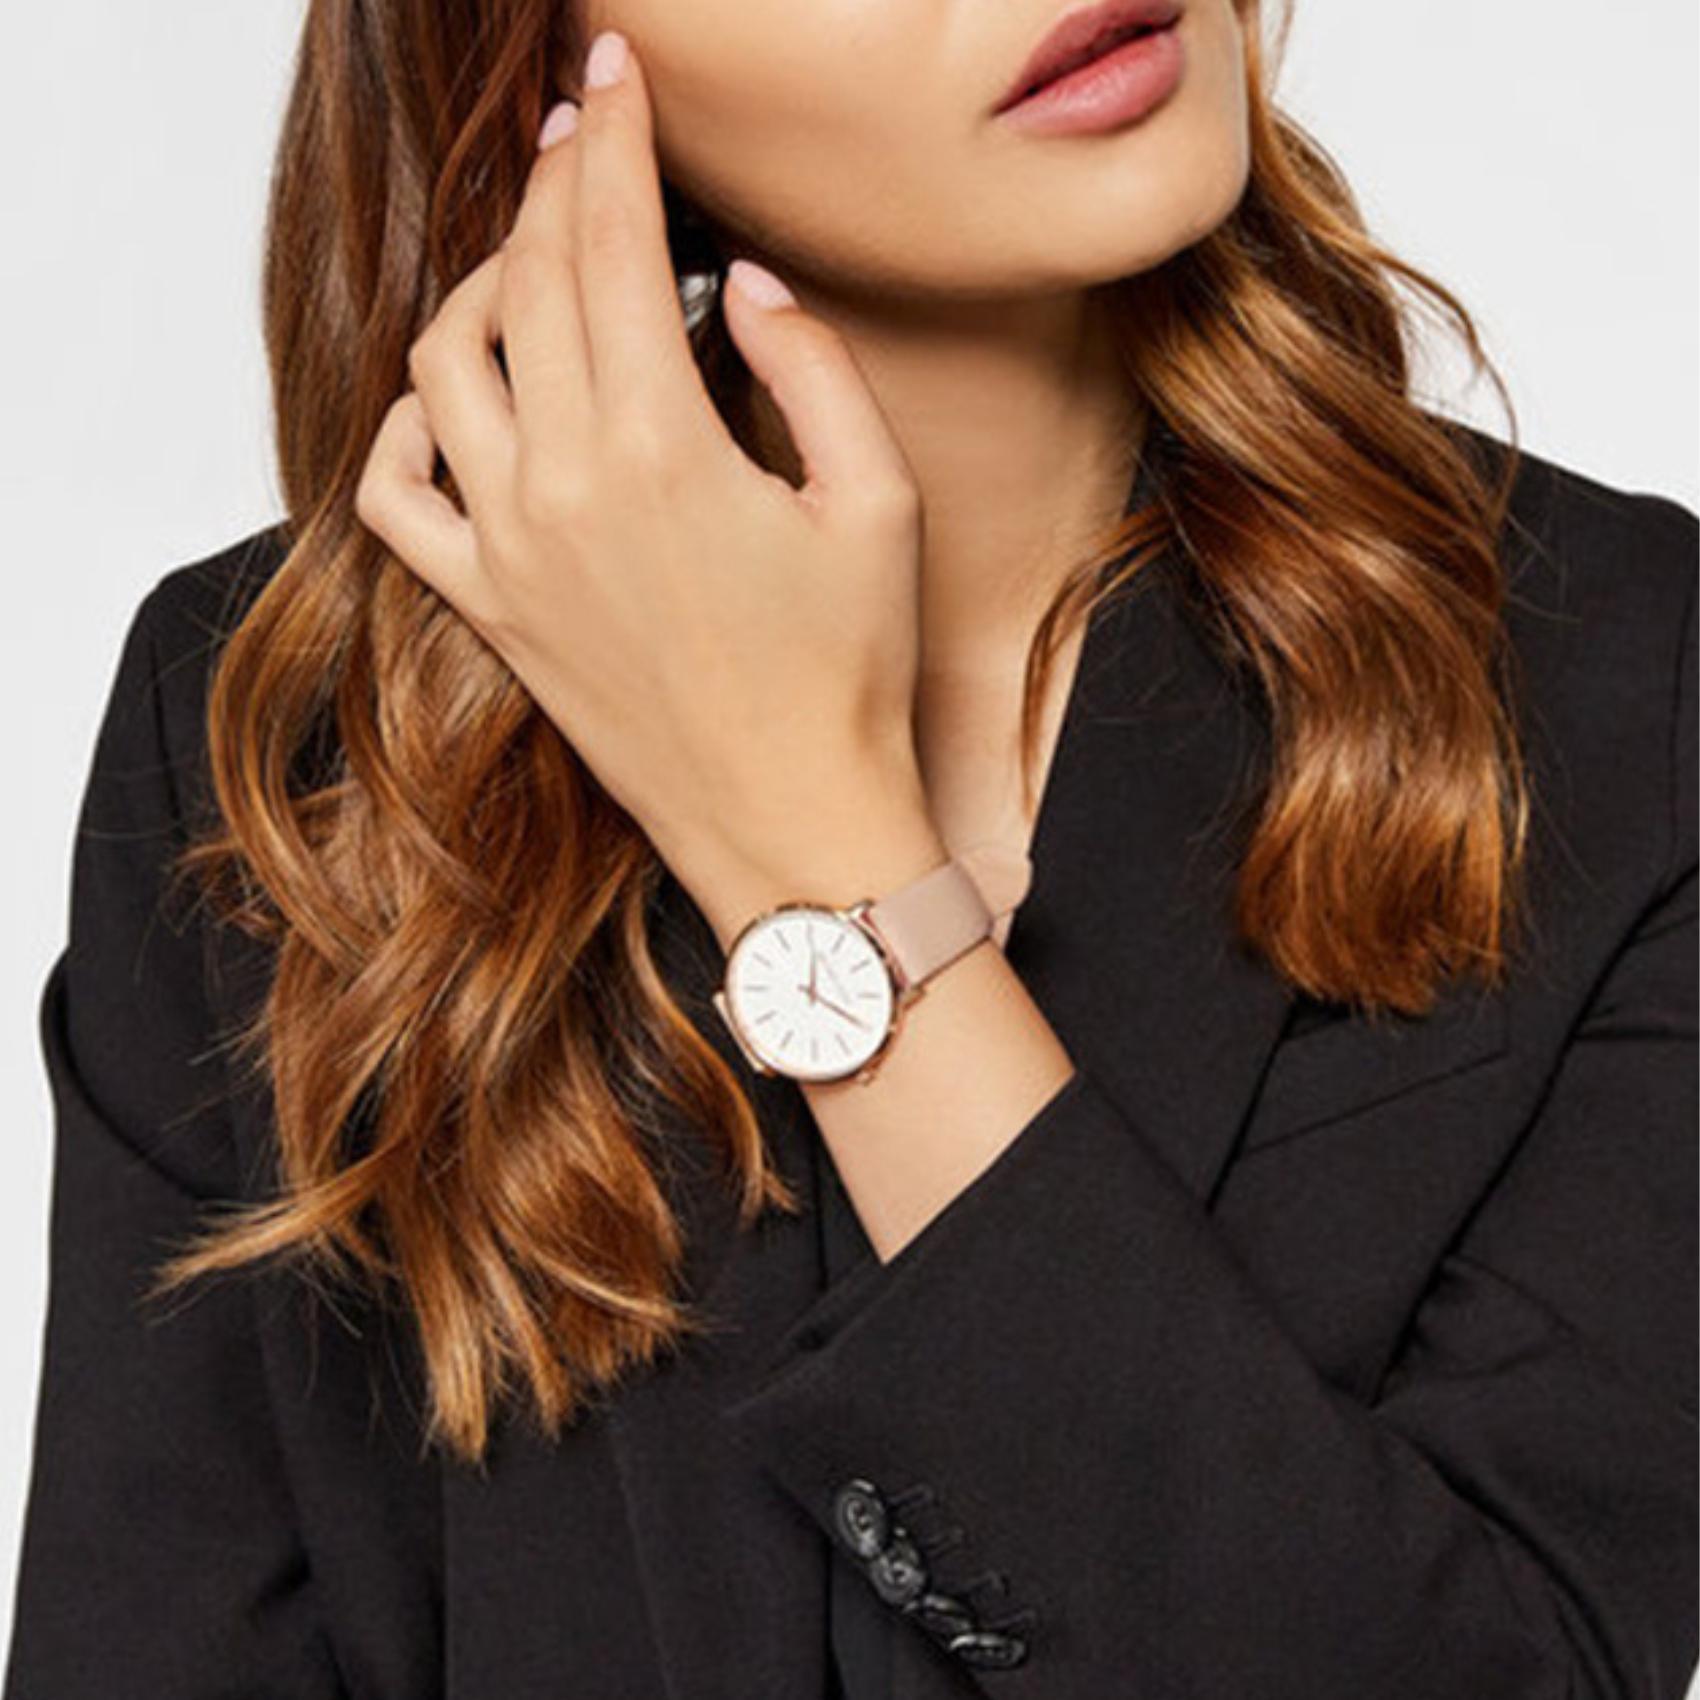 Γυναικείο ρολόι Michael Kors Pyper MK2748 με με μπεζ δερμάτινο λουράκι, στρογγυλό άσπρο καντράν με ζιργκόν και στεφάνι 37mm.